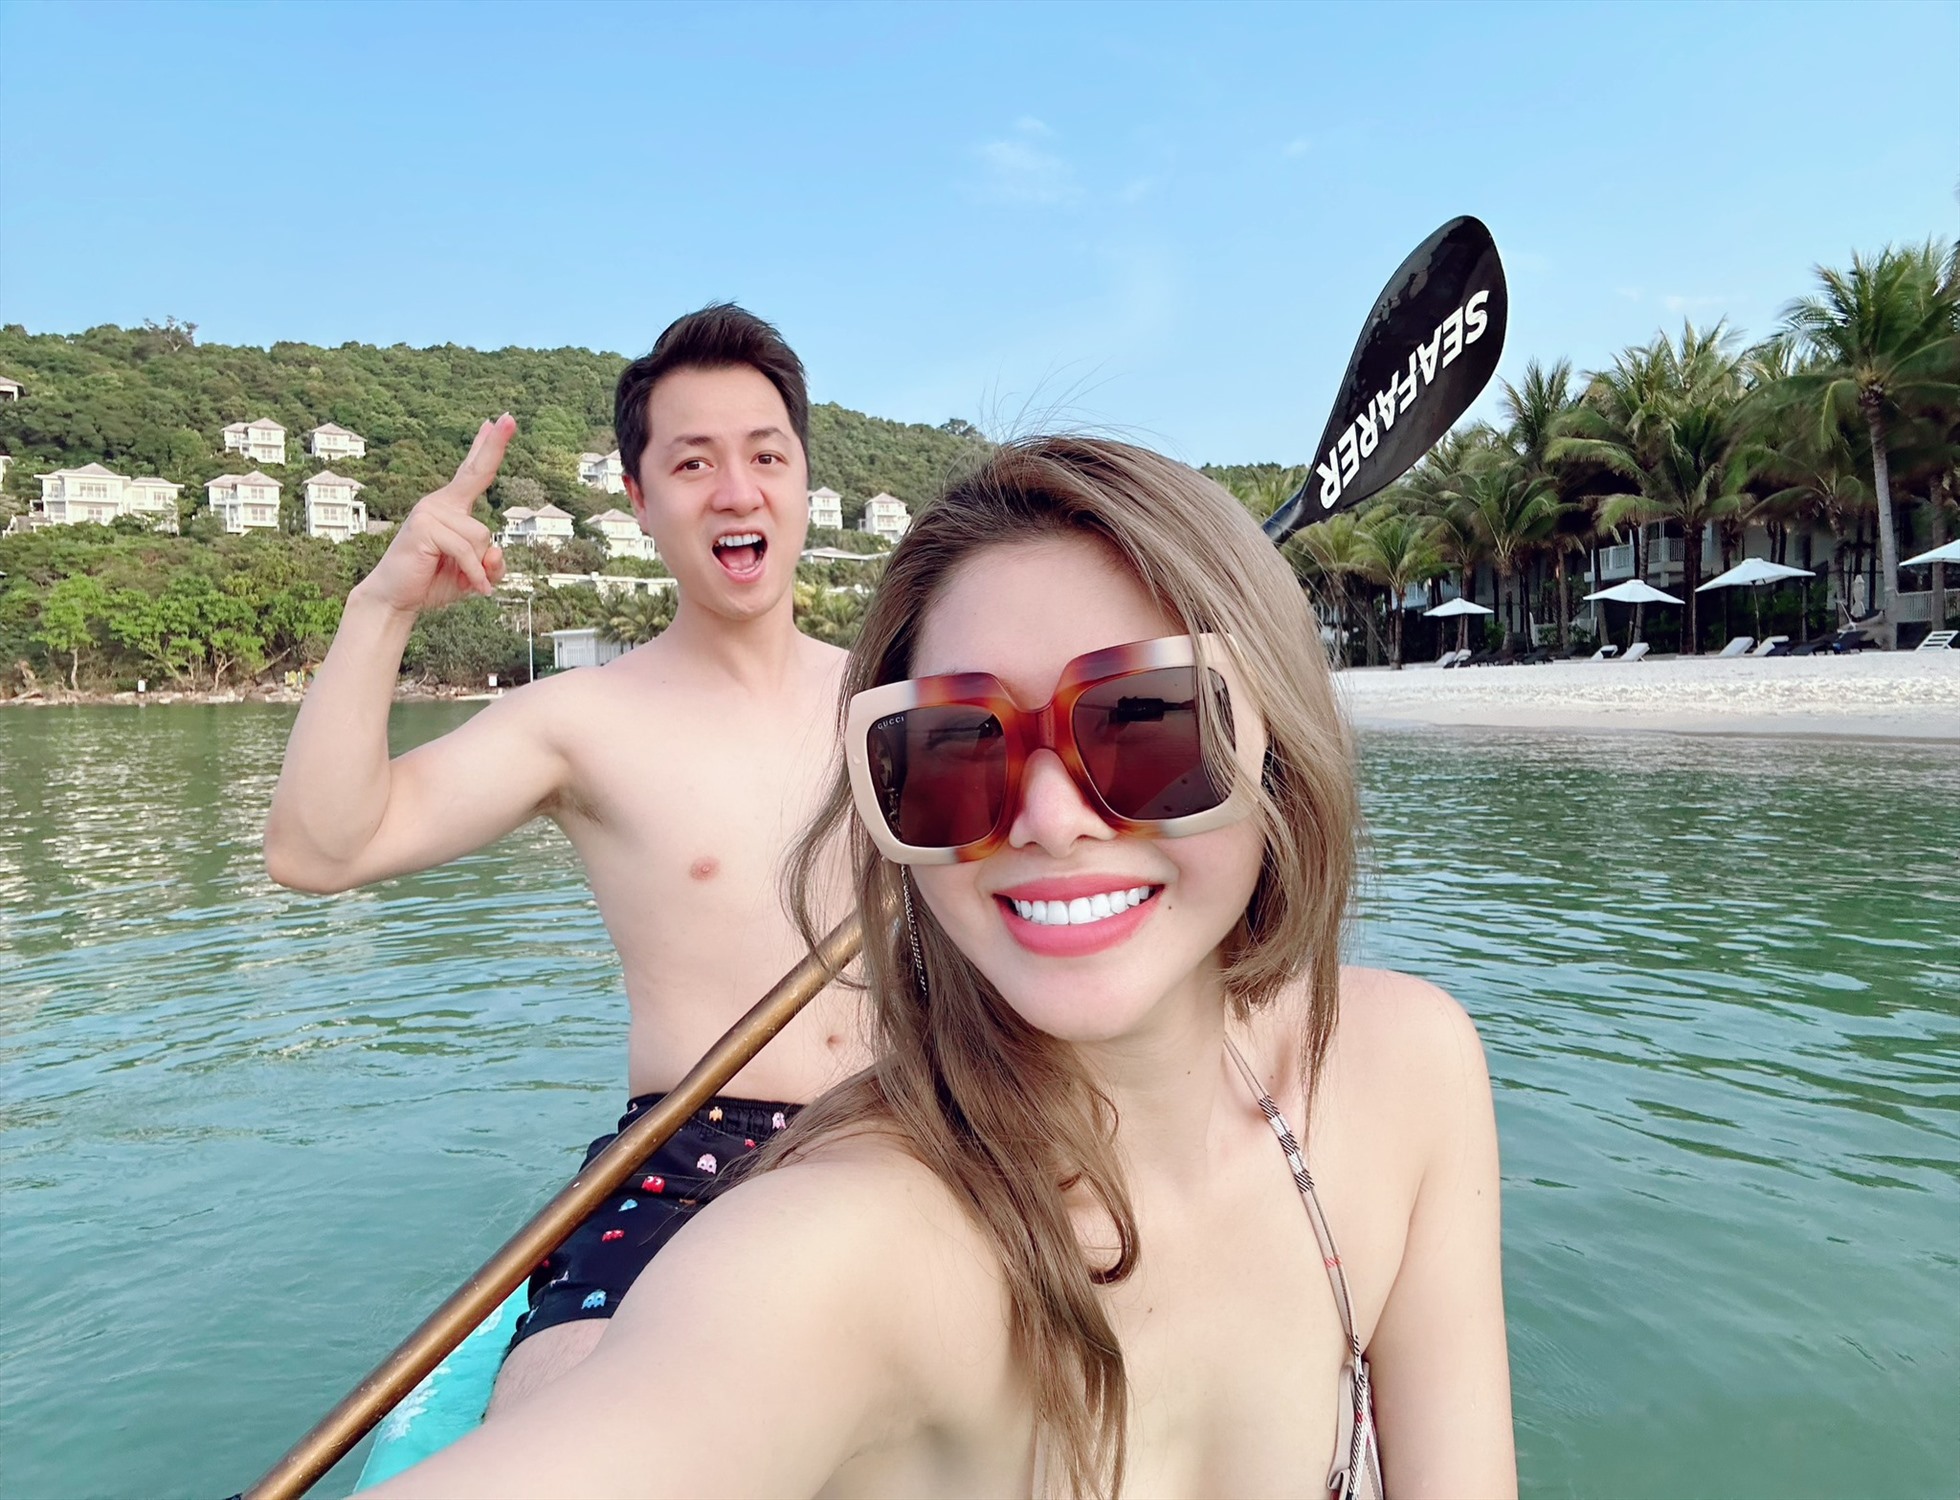 Cặp đôi khoe ảnh chèo thuyền kayak trên bãi biển. Tình cảm mặn nồng sau nhiều năm khiến công chúng ngưỡng mộ. Ảnh: Facebook nhân vật